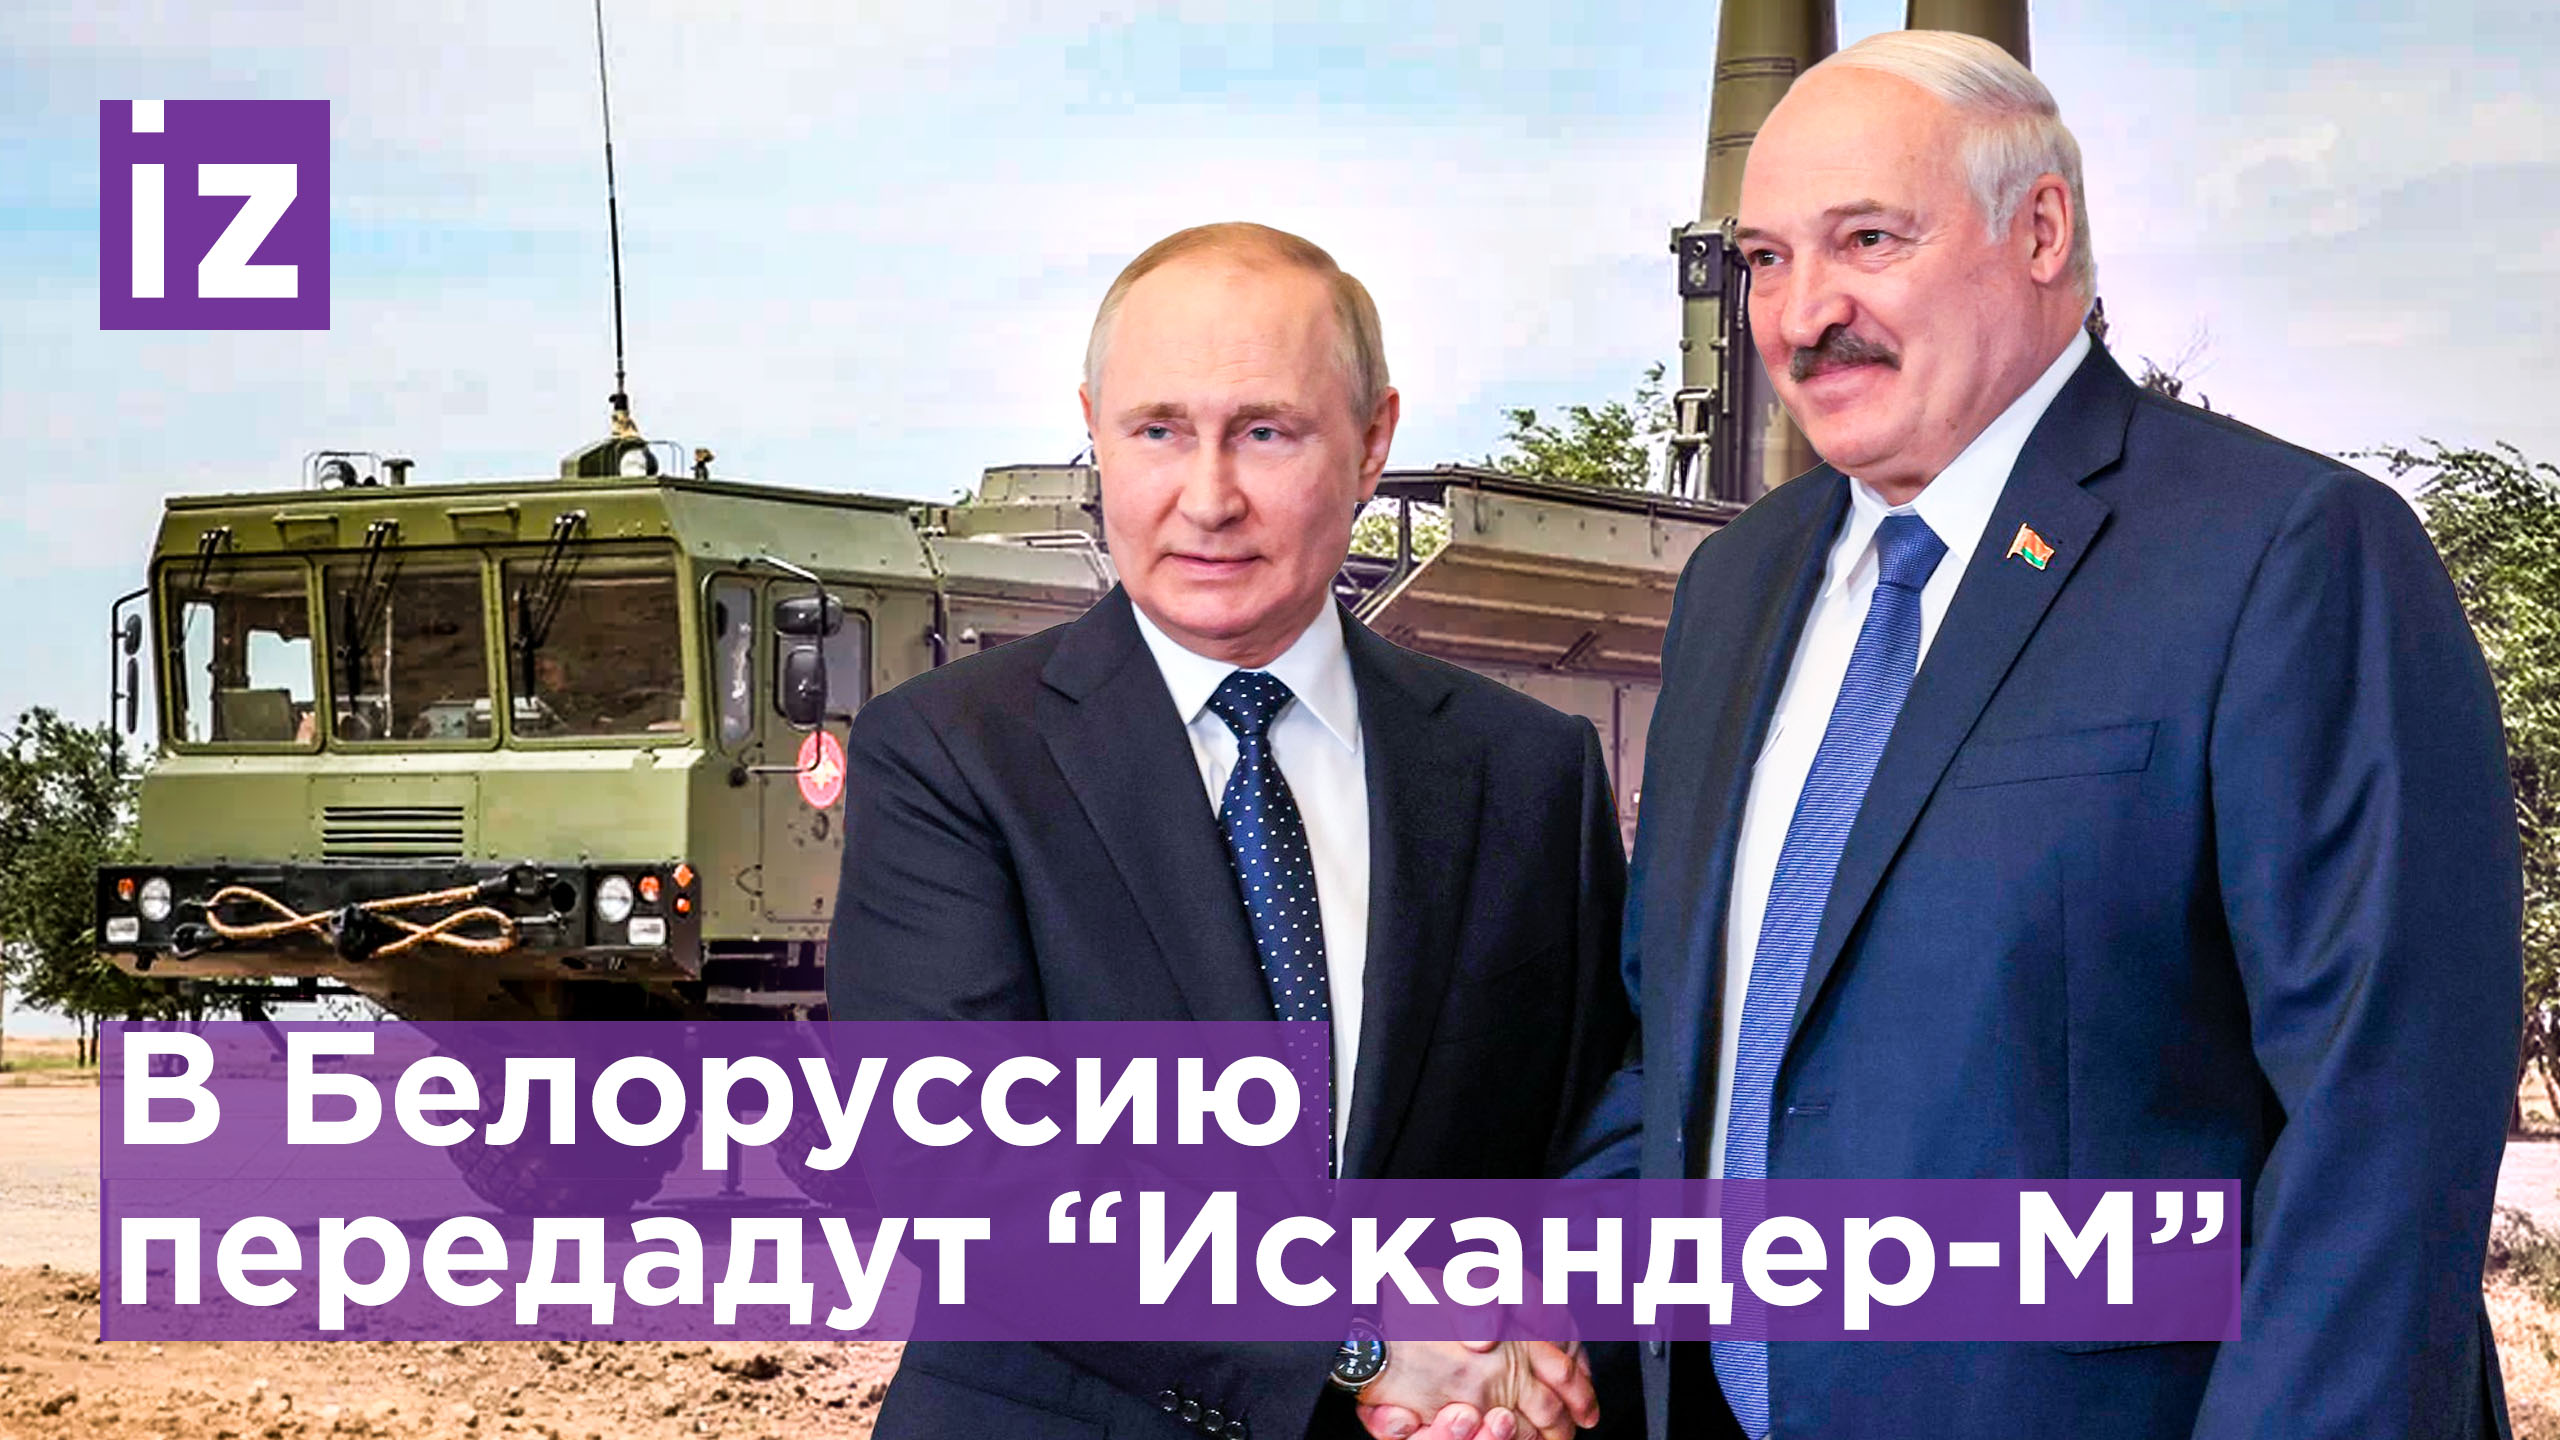 Зеркальный ответ на ядерное оружие НАТО у границ Белоруссии: Путин передаст Лукашенко "Искандер-М"